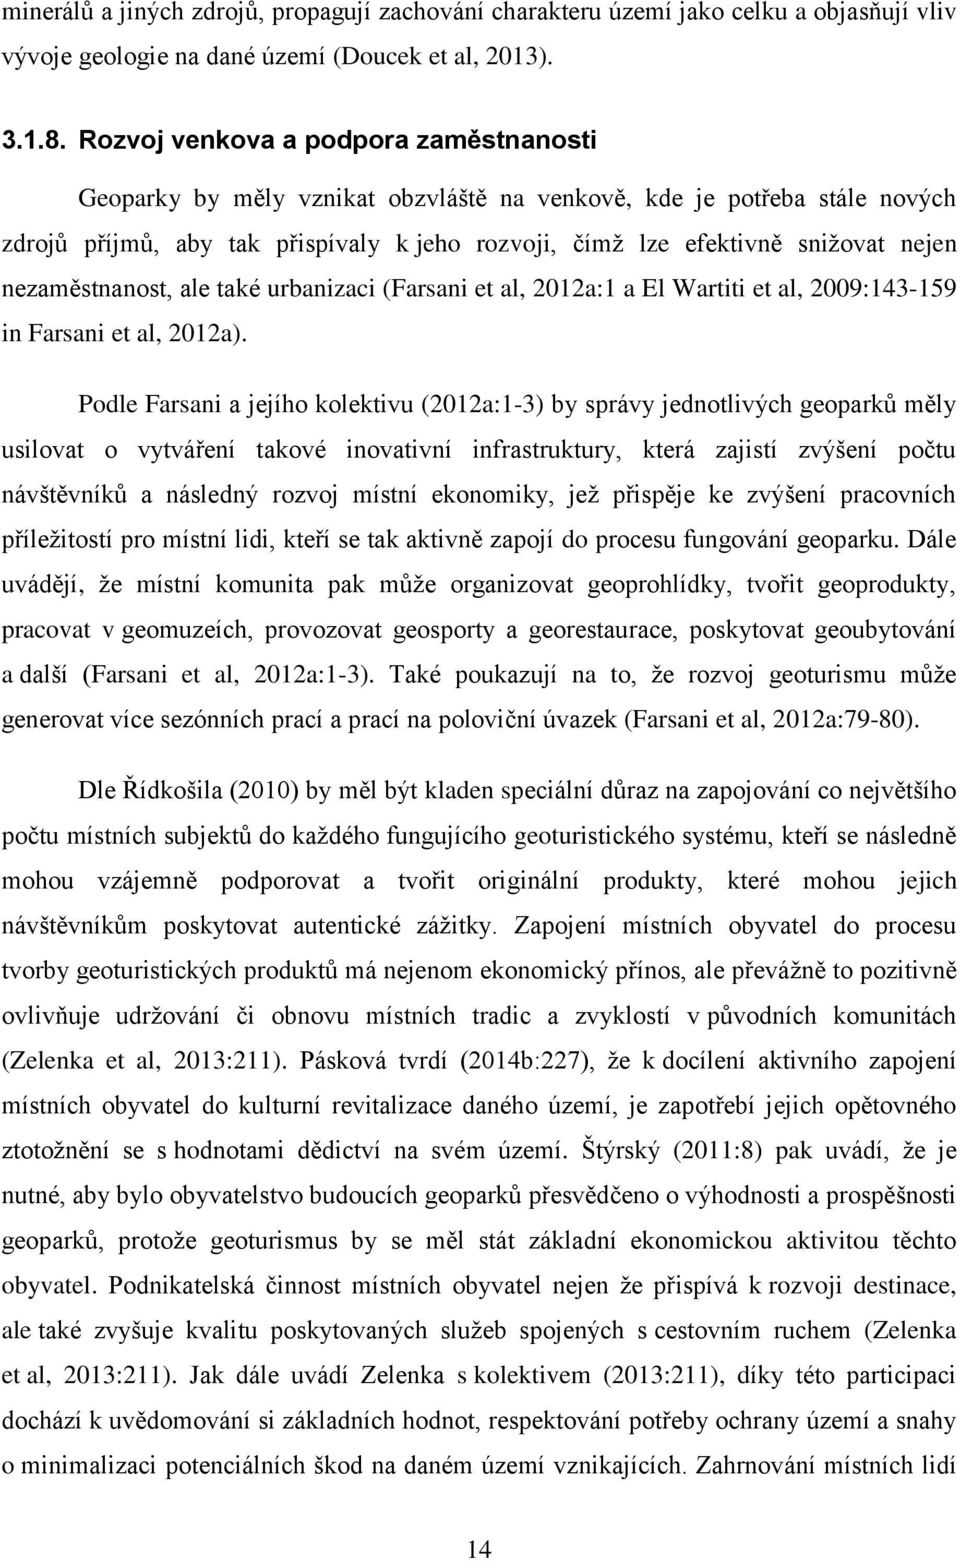 Návrh geoturistického produktu Geoparku Vysočina - PDF Free Download